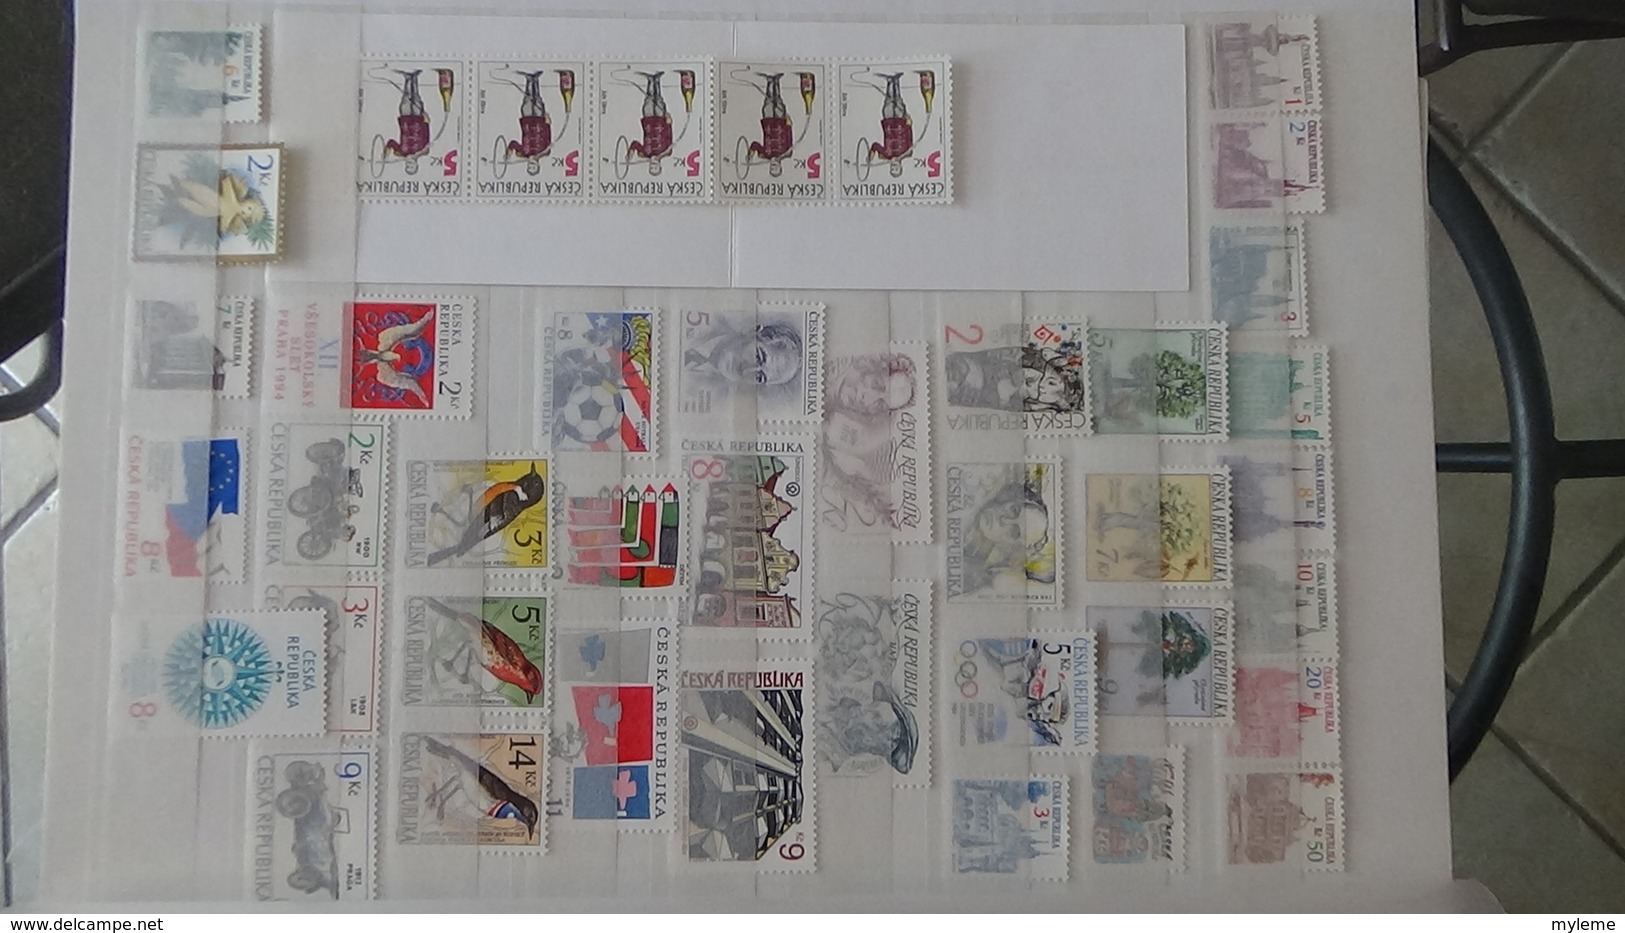 Très belle collection de timbres, blocs et carnets tout est ** de Tchecoslovaquie. Port offert à partir de 50E d'achats